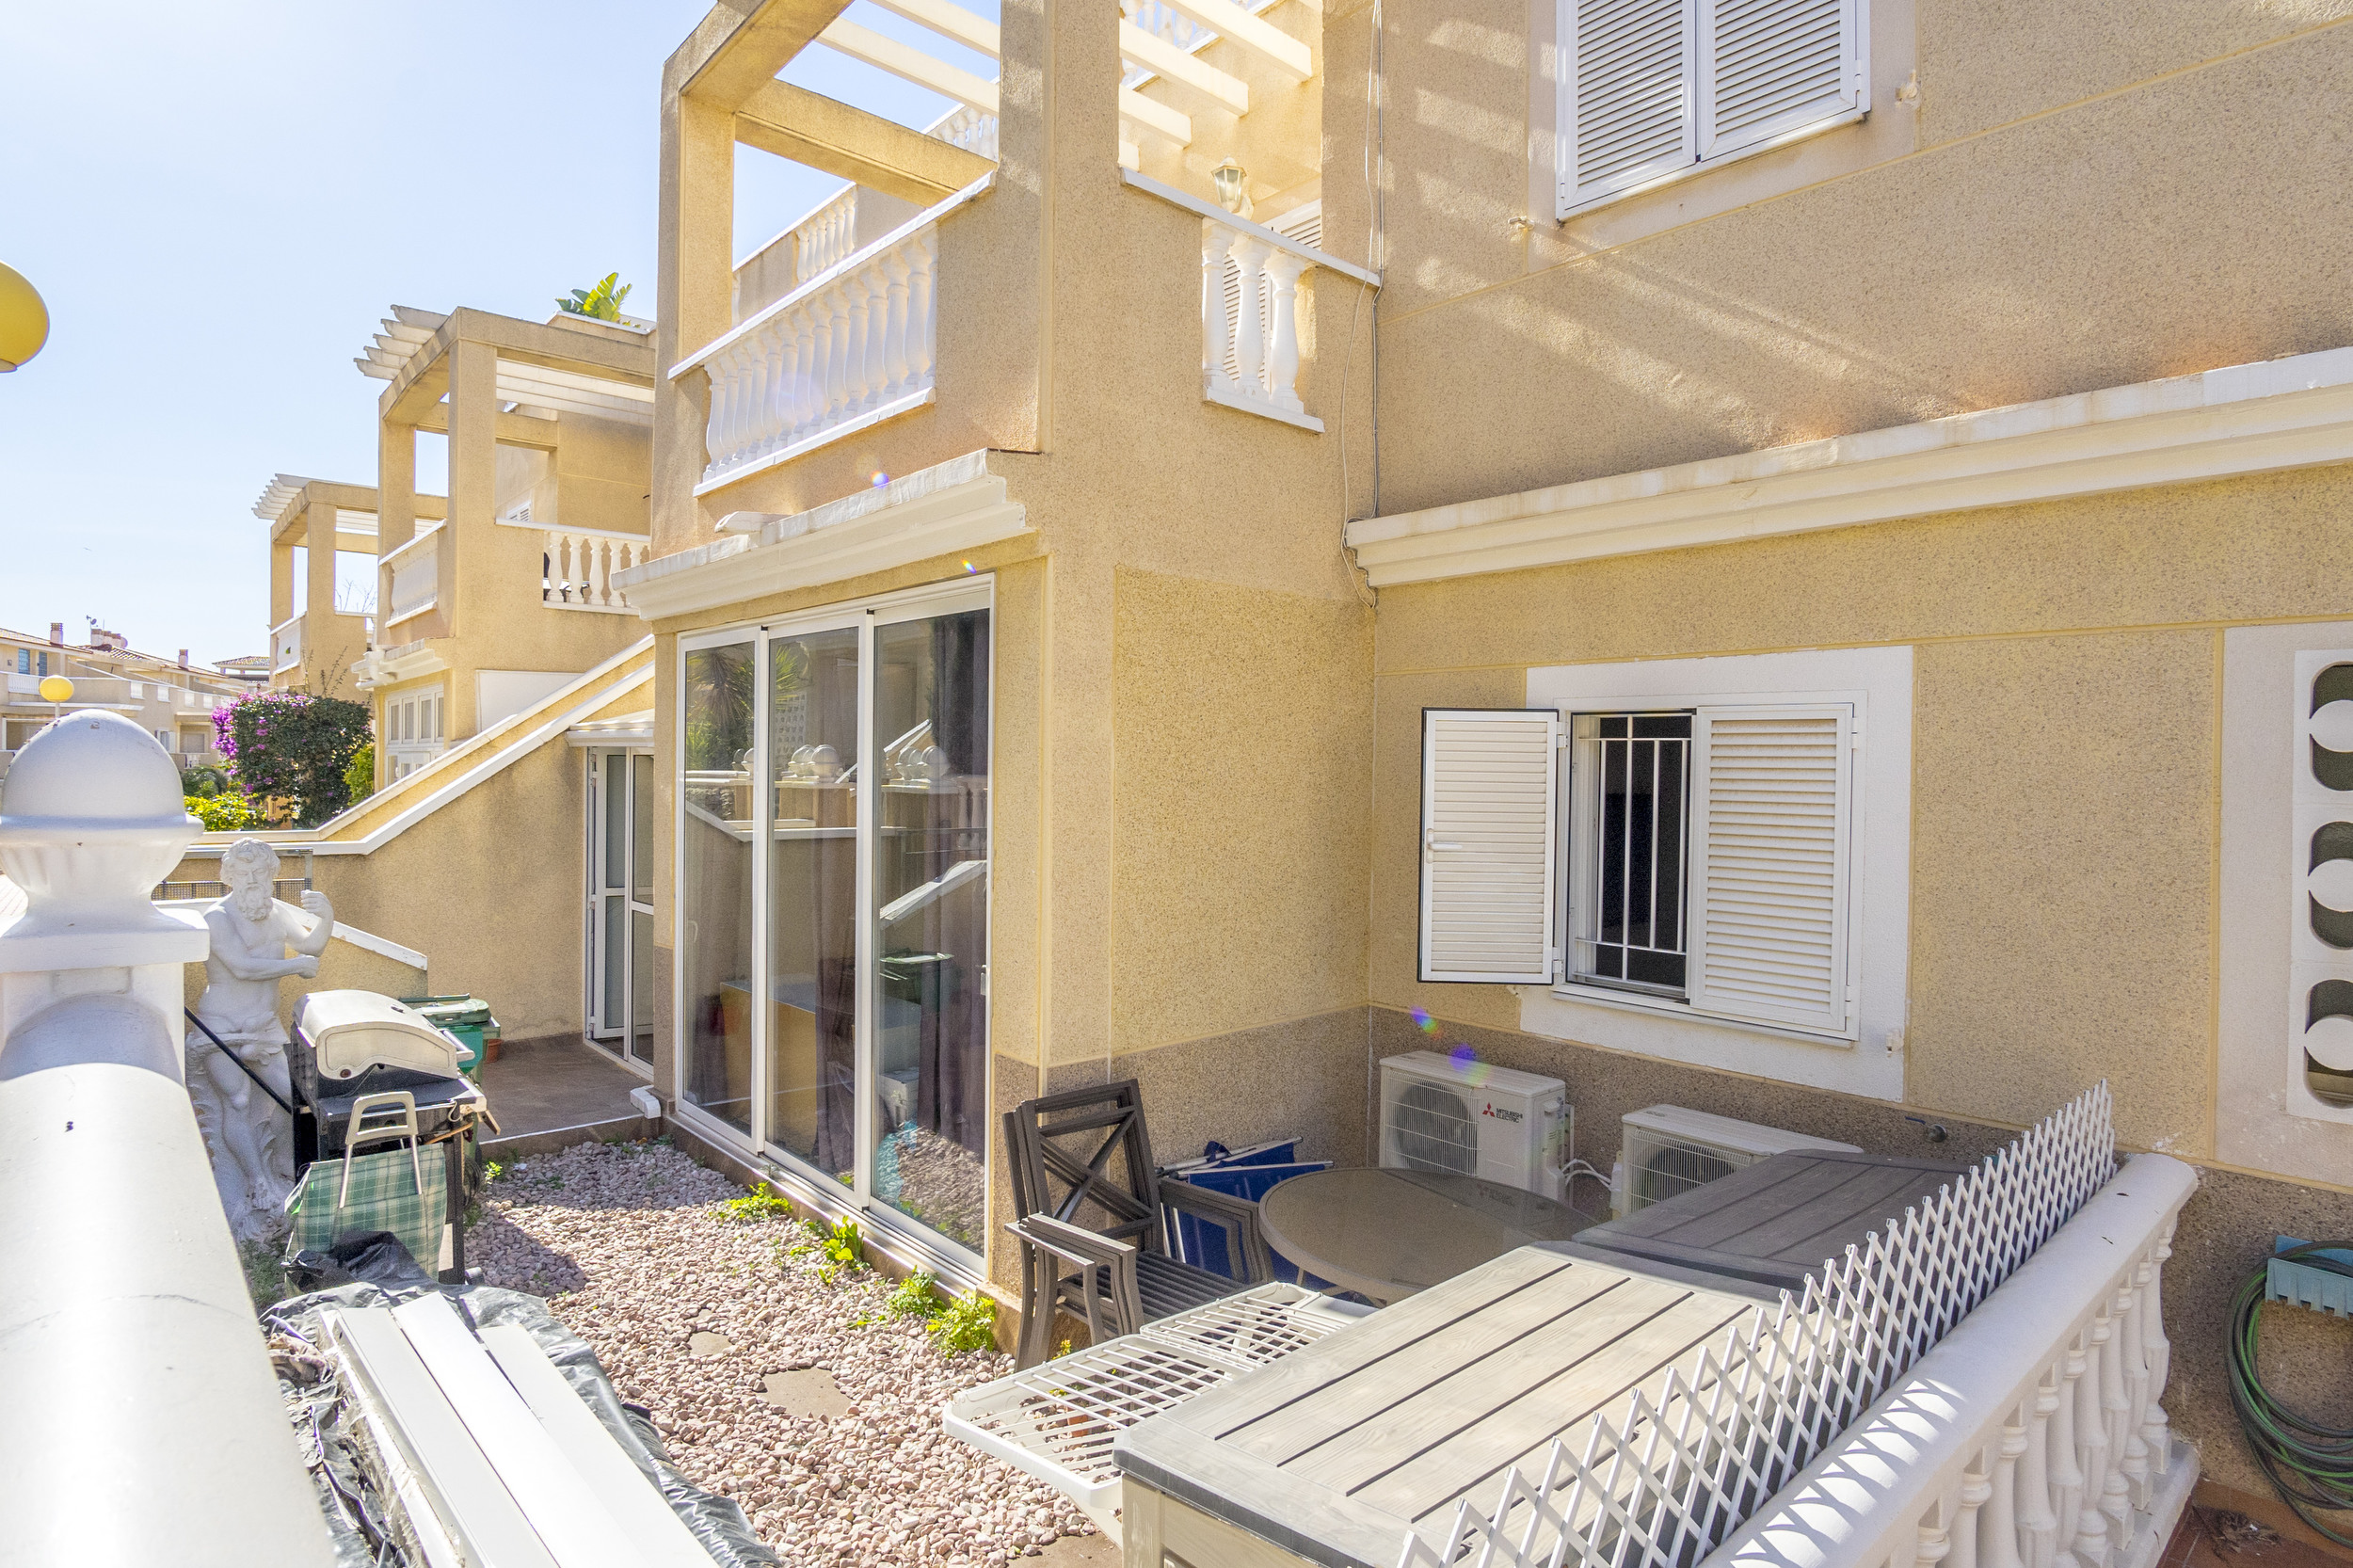 3405-03597. Zeniamar VI Ground floor apartment with glazed in terrace and garden